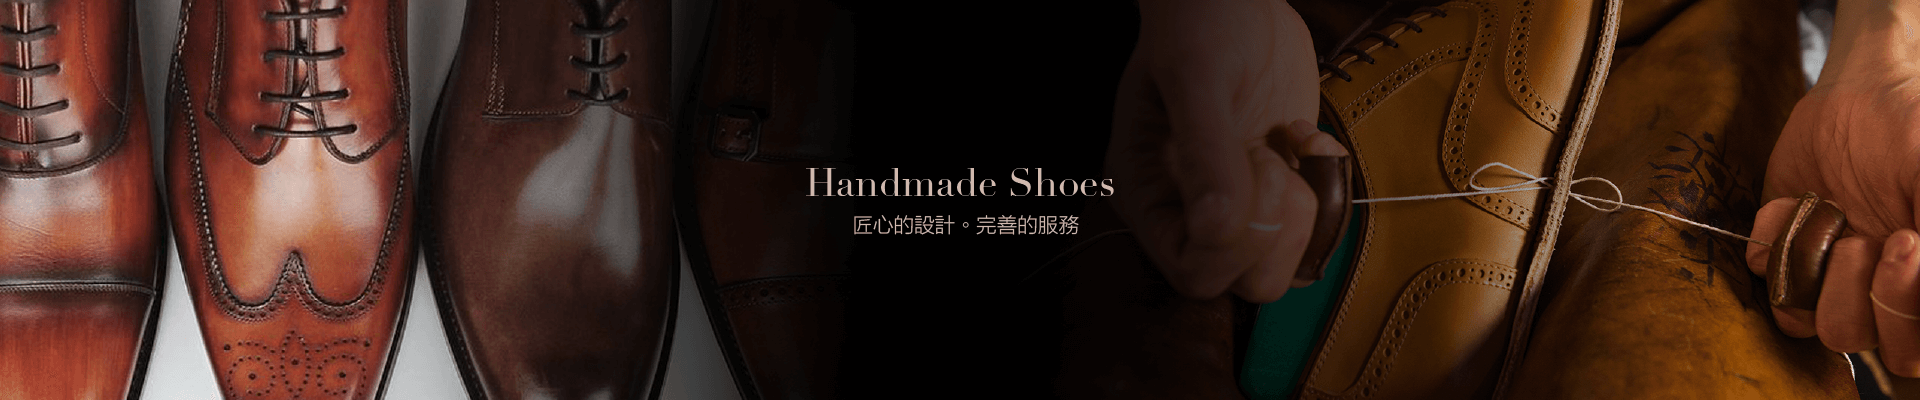 手工訂製鞋履